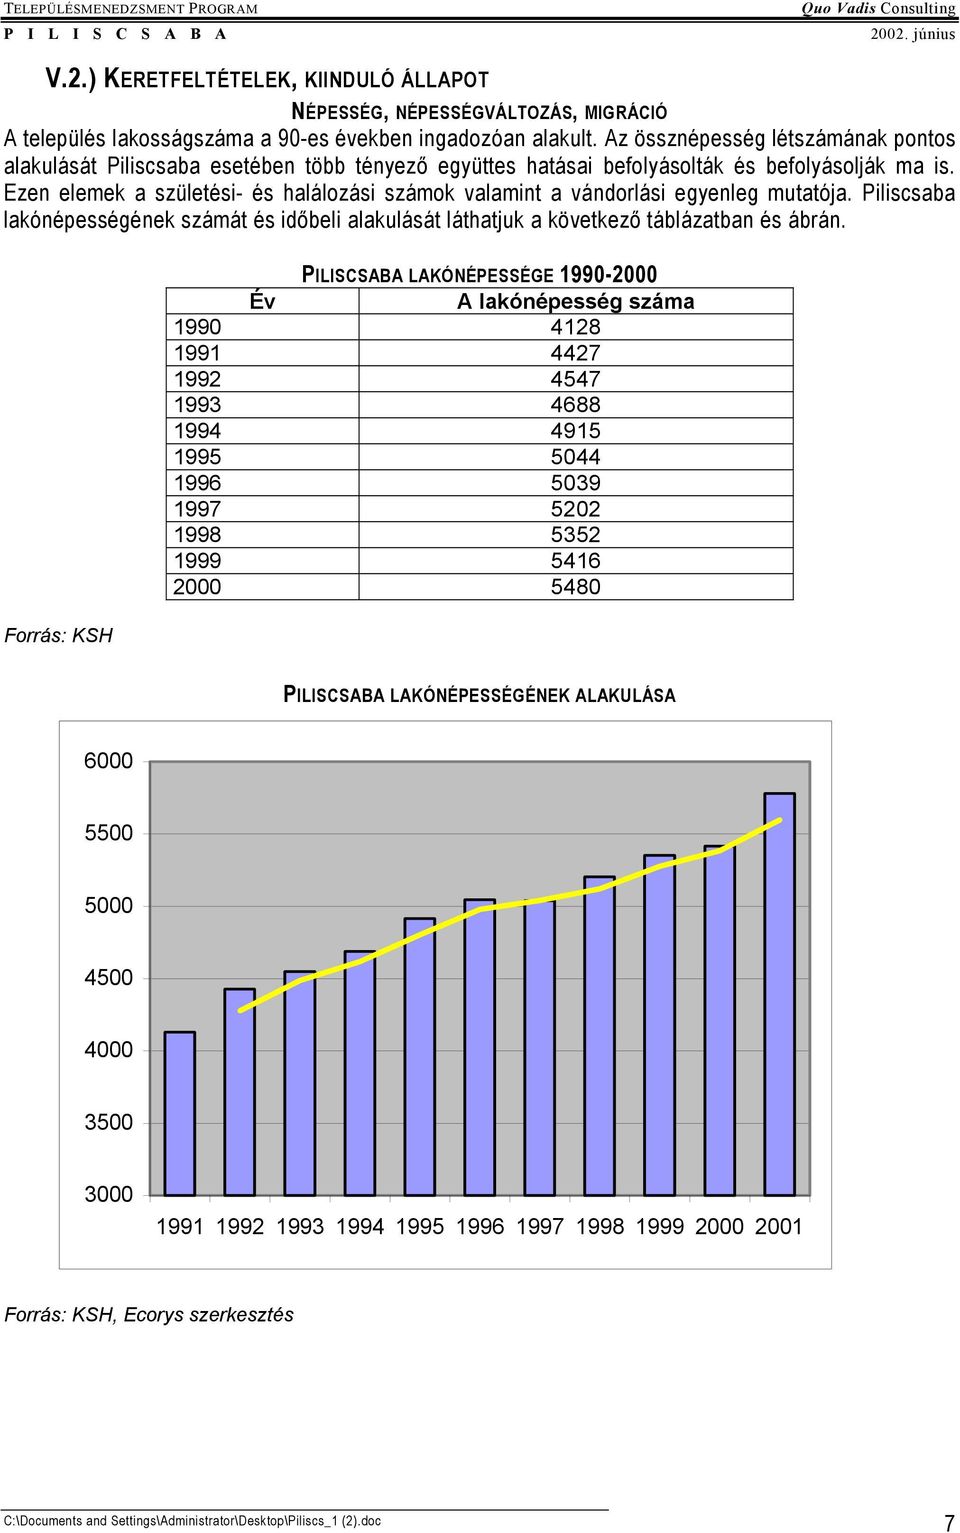 Ezen elemek a születési- és halálozási számok valamint a vándorlási egyenleg mutatója. Piliscsaba lakónépességének számát és időbeli alakulását láthatjuk a következő táblázatban és ábrán.